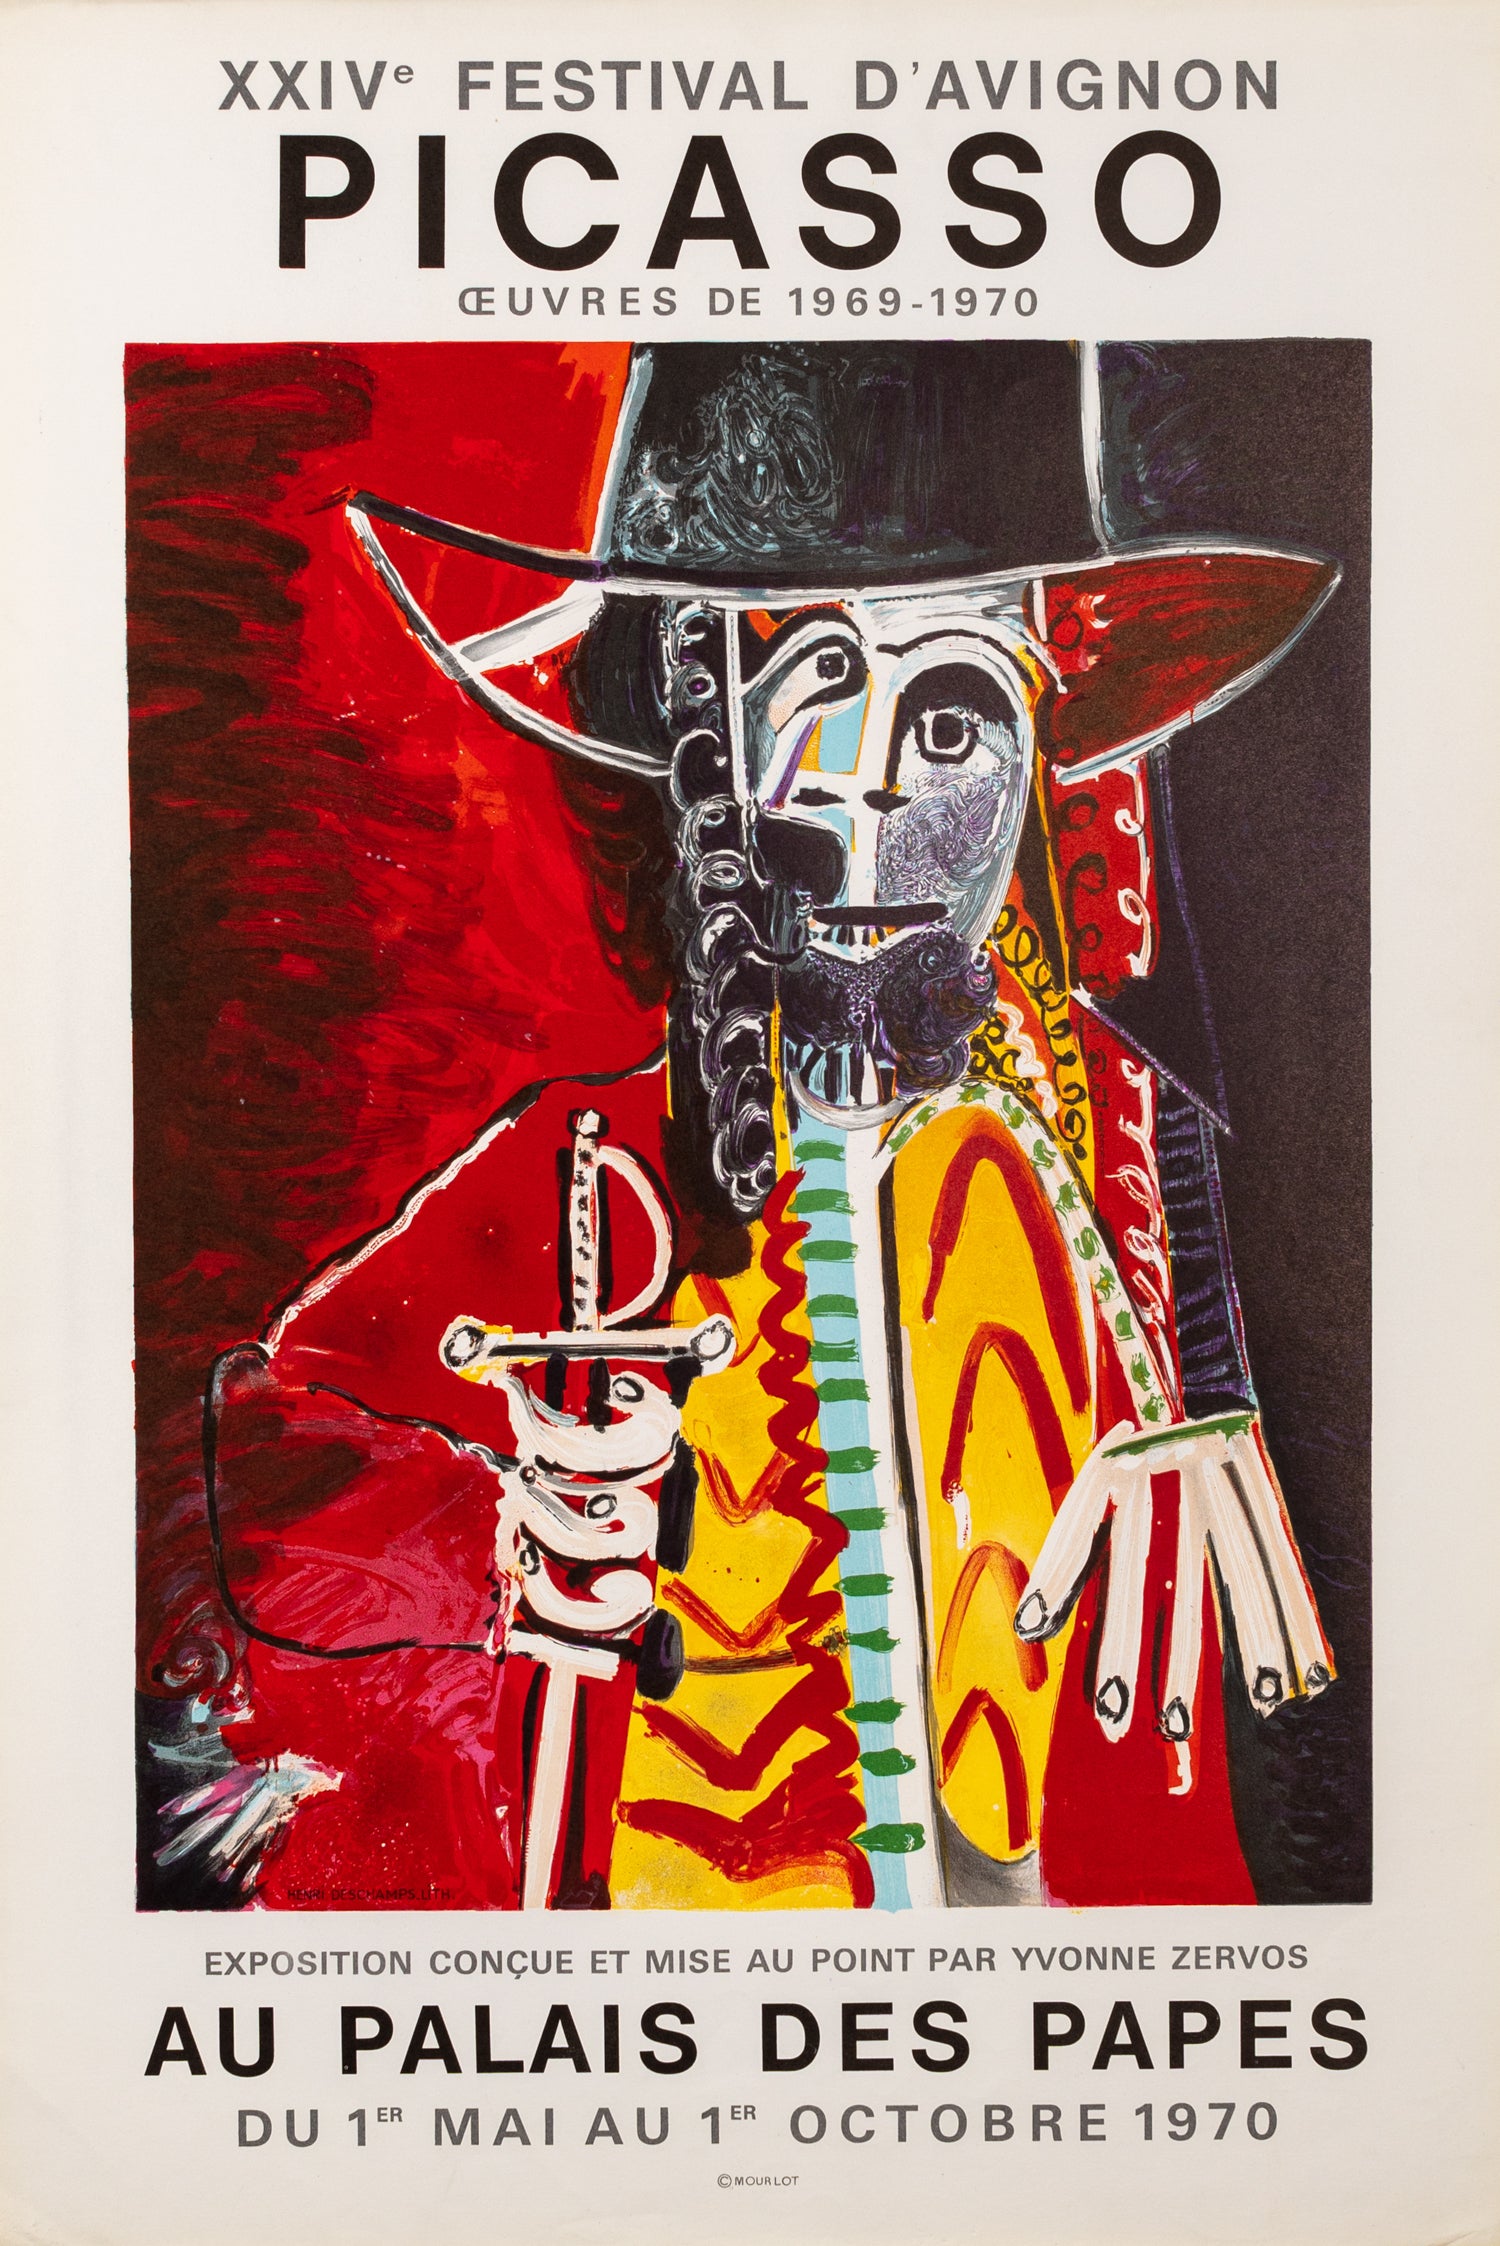 Homme a l'épée - Picasso - Au Palais des Papes (after) Pablo Picasso, 1970 - Mourlot Editions - Fine_Art - Poster - Lithograph - Wall Art - Vintage - Prints - Original